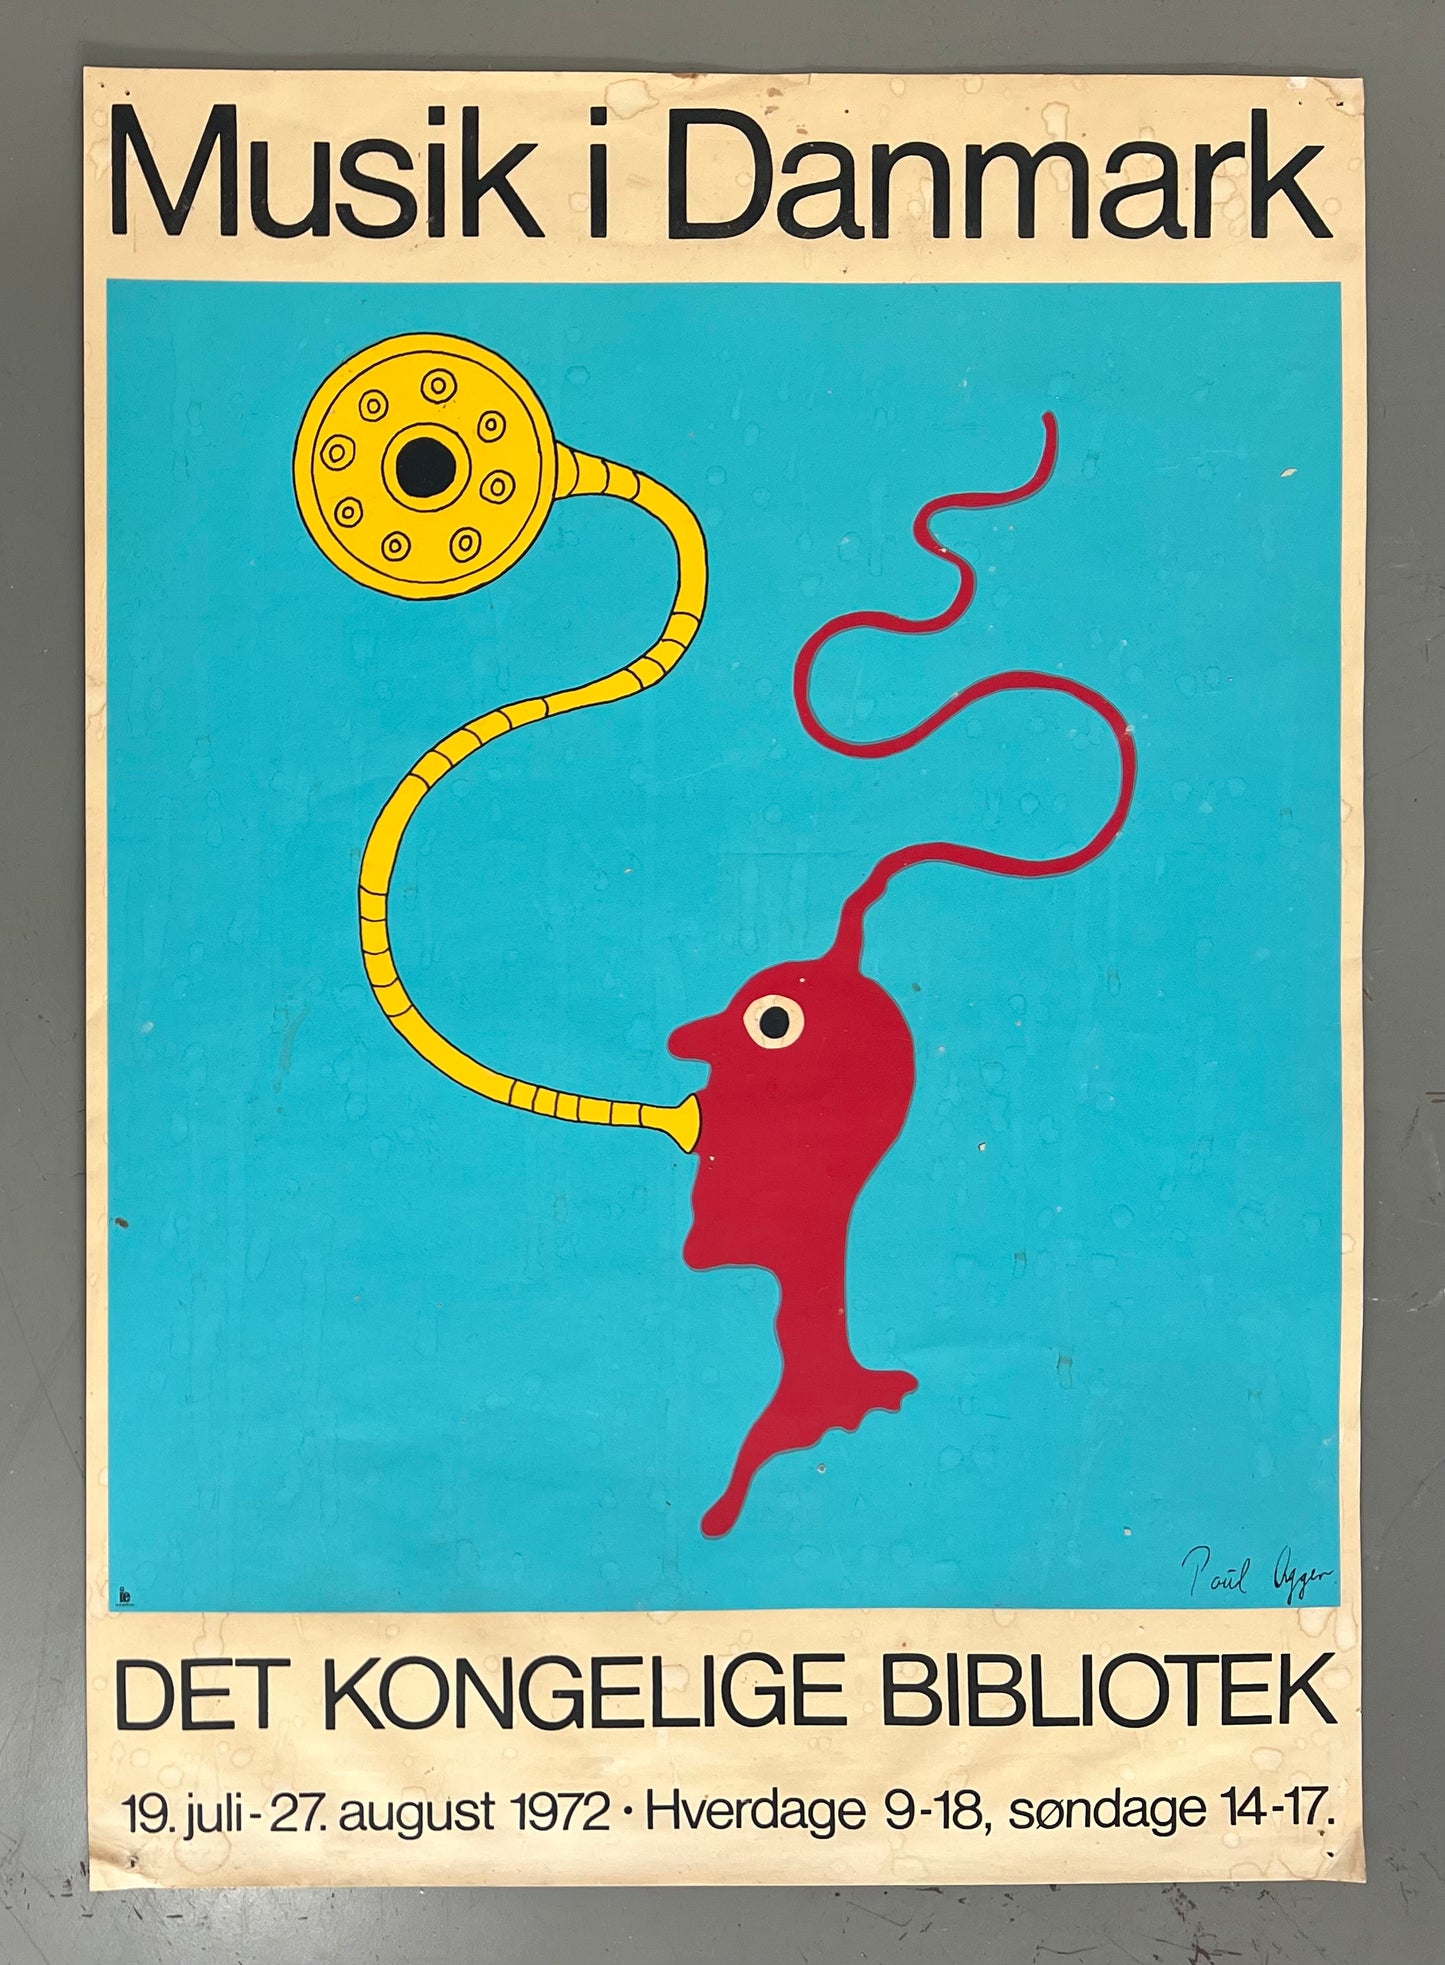 Poul Agger. “Musik i Danmark”, 1972